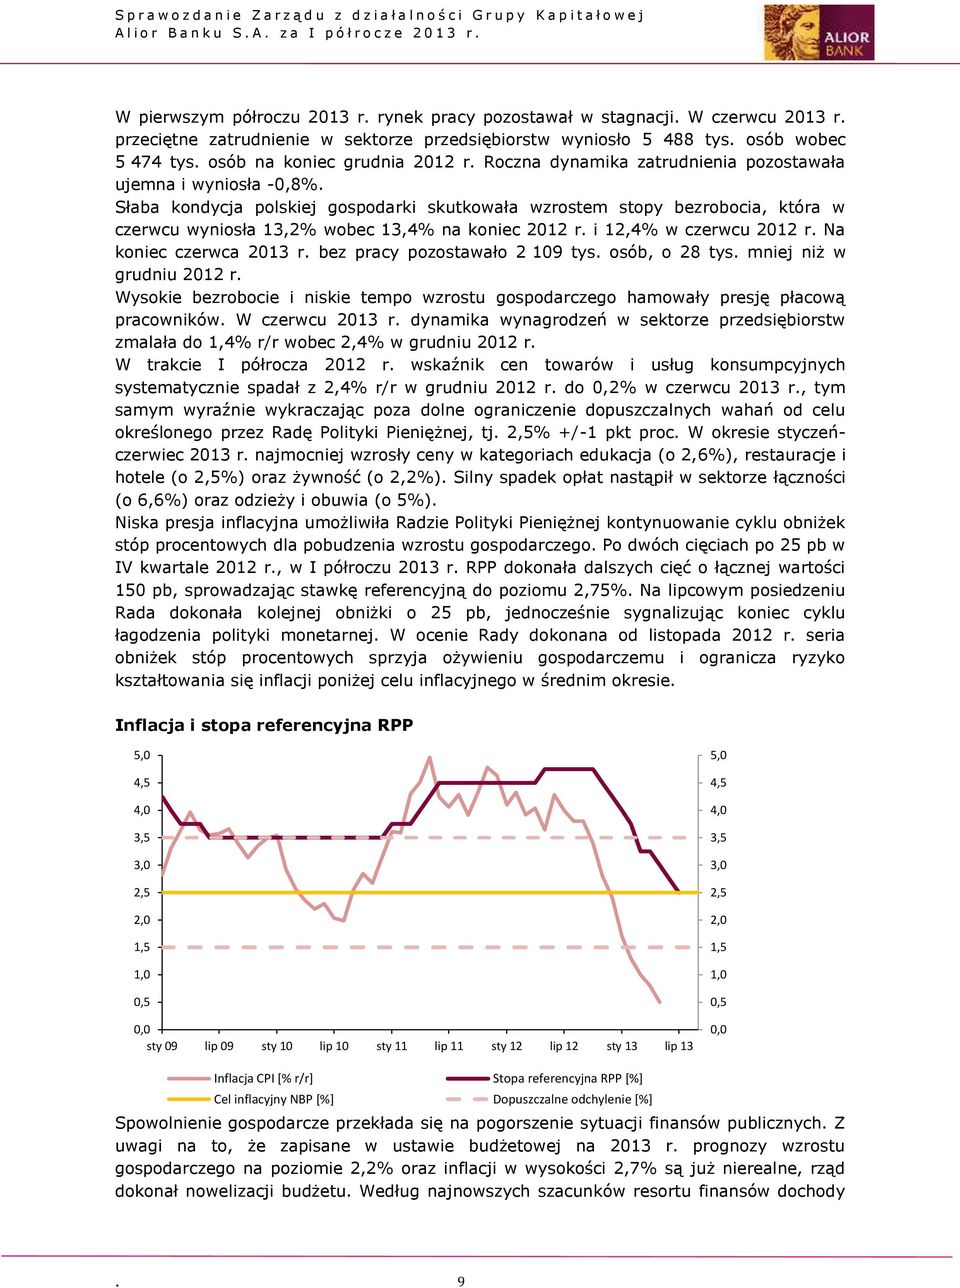 Słaba kondycja polskiej gospodarki skutkowała wzrostem stopy bezrobocia, która w czerwcu wyniosła 13,2% wobec 13,4% na koniec 2012 r. i 12,4% w czerwcu 2012 r. Na koniec czerwca 2013 r.